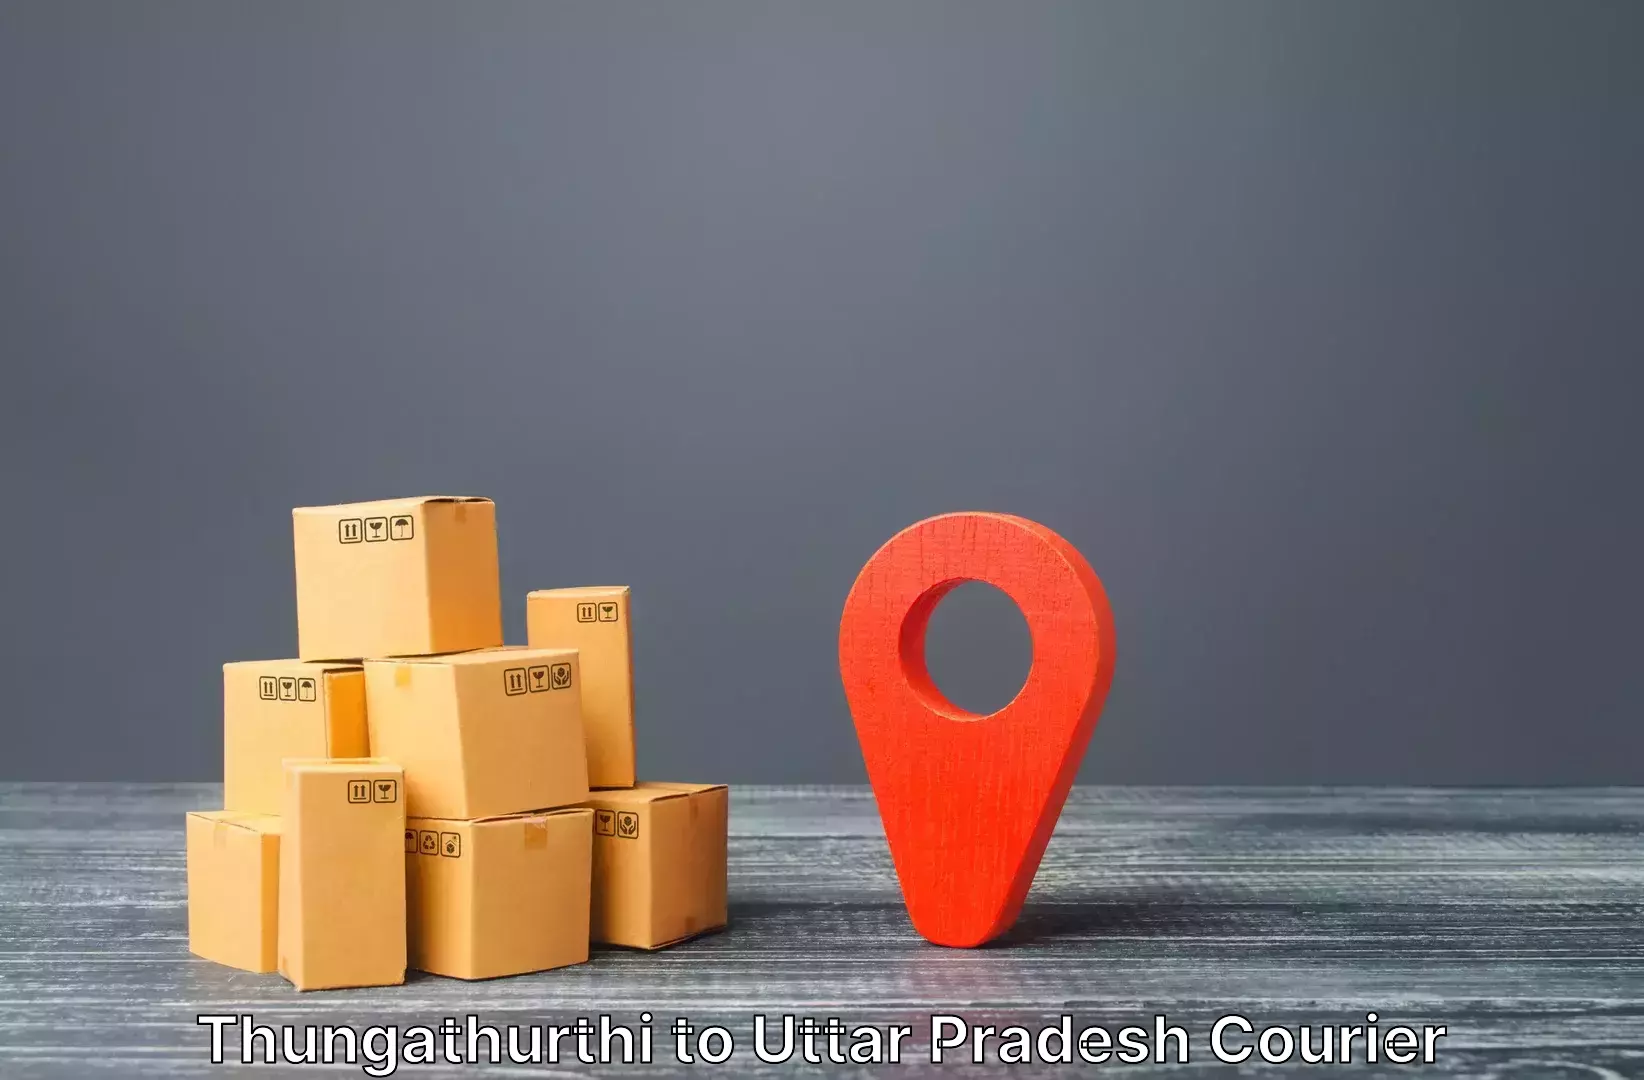 Luggage transport consulting Thungathurthi to Uttar Pradesh